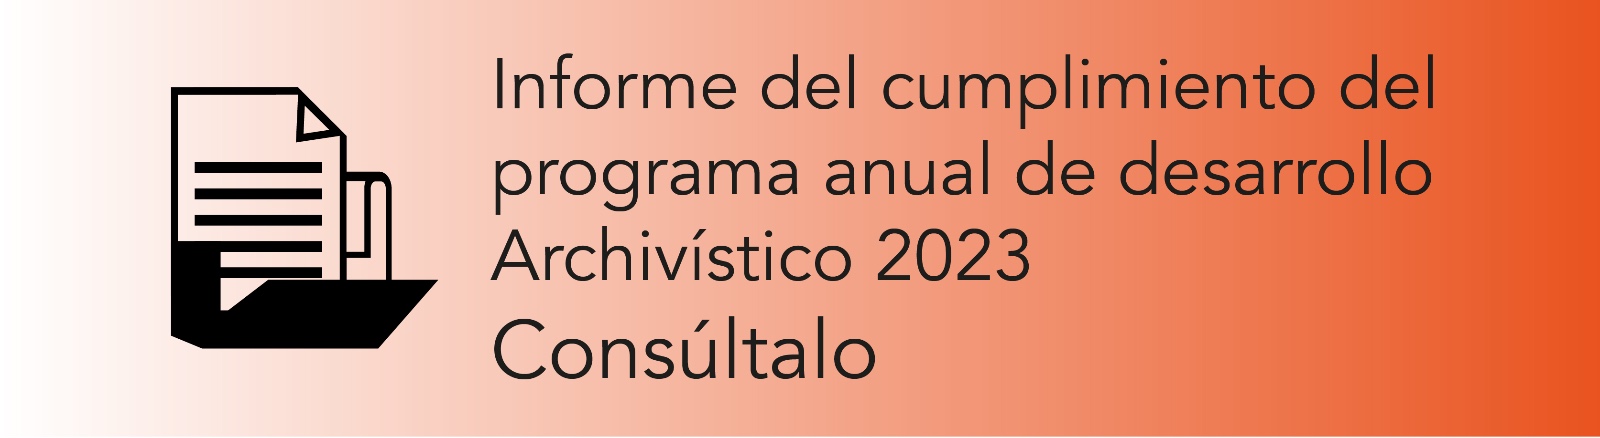 Imagen que permite conocer el Informe del cumplimiento del Programa Anual de Desarrollo Archivístico 2023